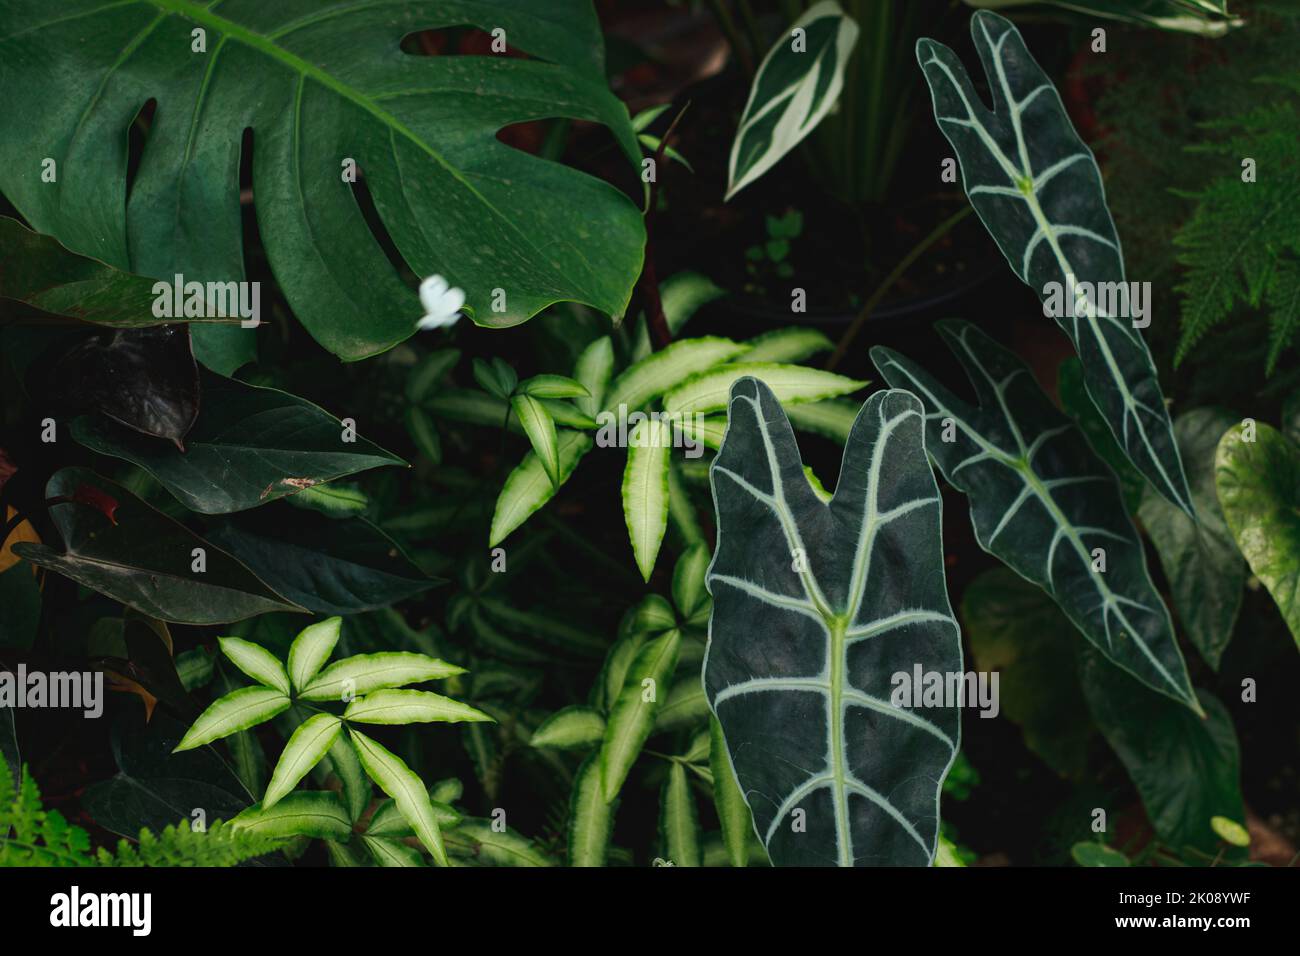 Alocasia micholitziana tra gli altri fogliame esotico in un lussureggiante giardino tropicale Foto Stock